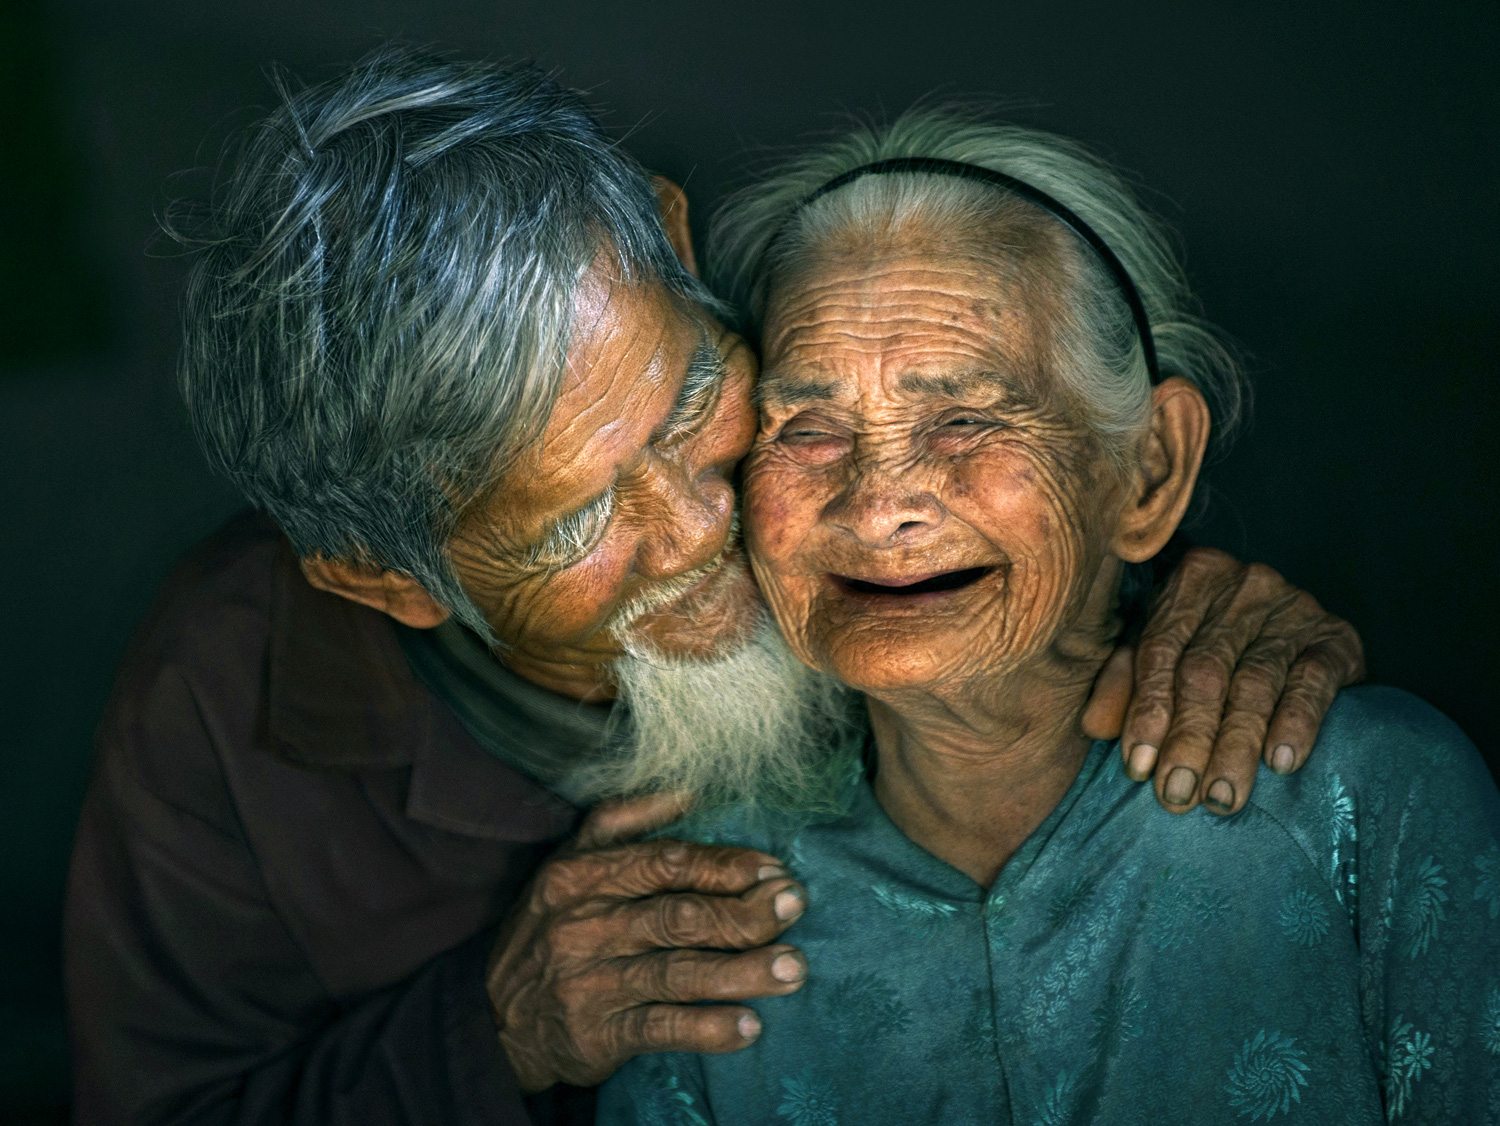 Những bức ảnh cặp đôi già hạnh phúc sẽ làm bạn tan chảy với tình yêu và sự đoàn viên của họ. Họ đã cùng nhau trải qua bao nhiêu năm tháng với những niềm vui, buồn, cùng nhau vượt qua mọi khó khăn để đến với ngày hôm nay. Hãy cùng nhìn ngắm họ và tìm thấy niềm tin vào tình yêu đích thực.